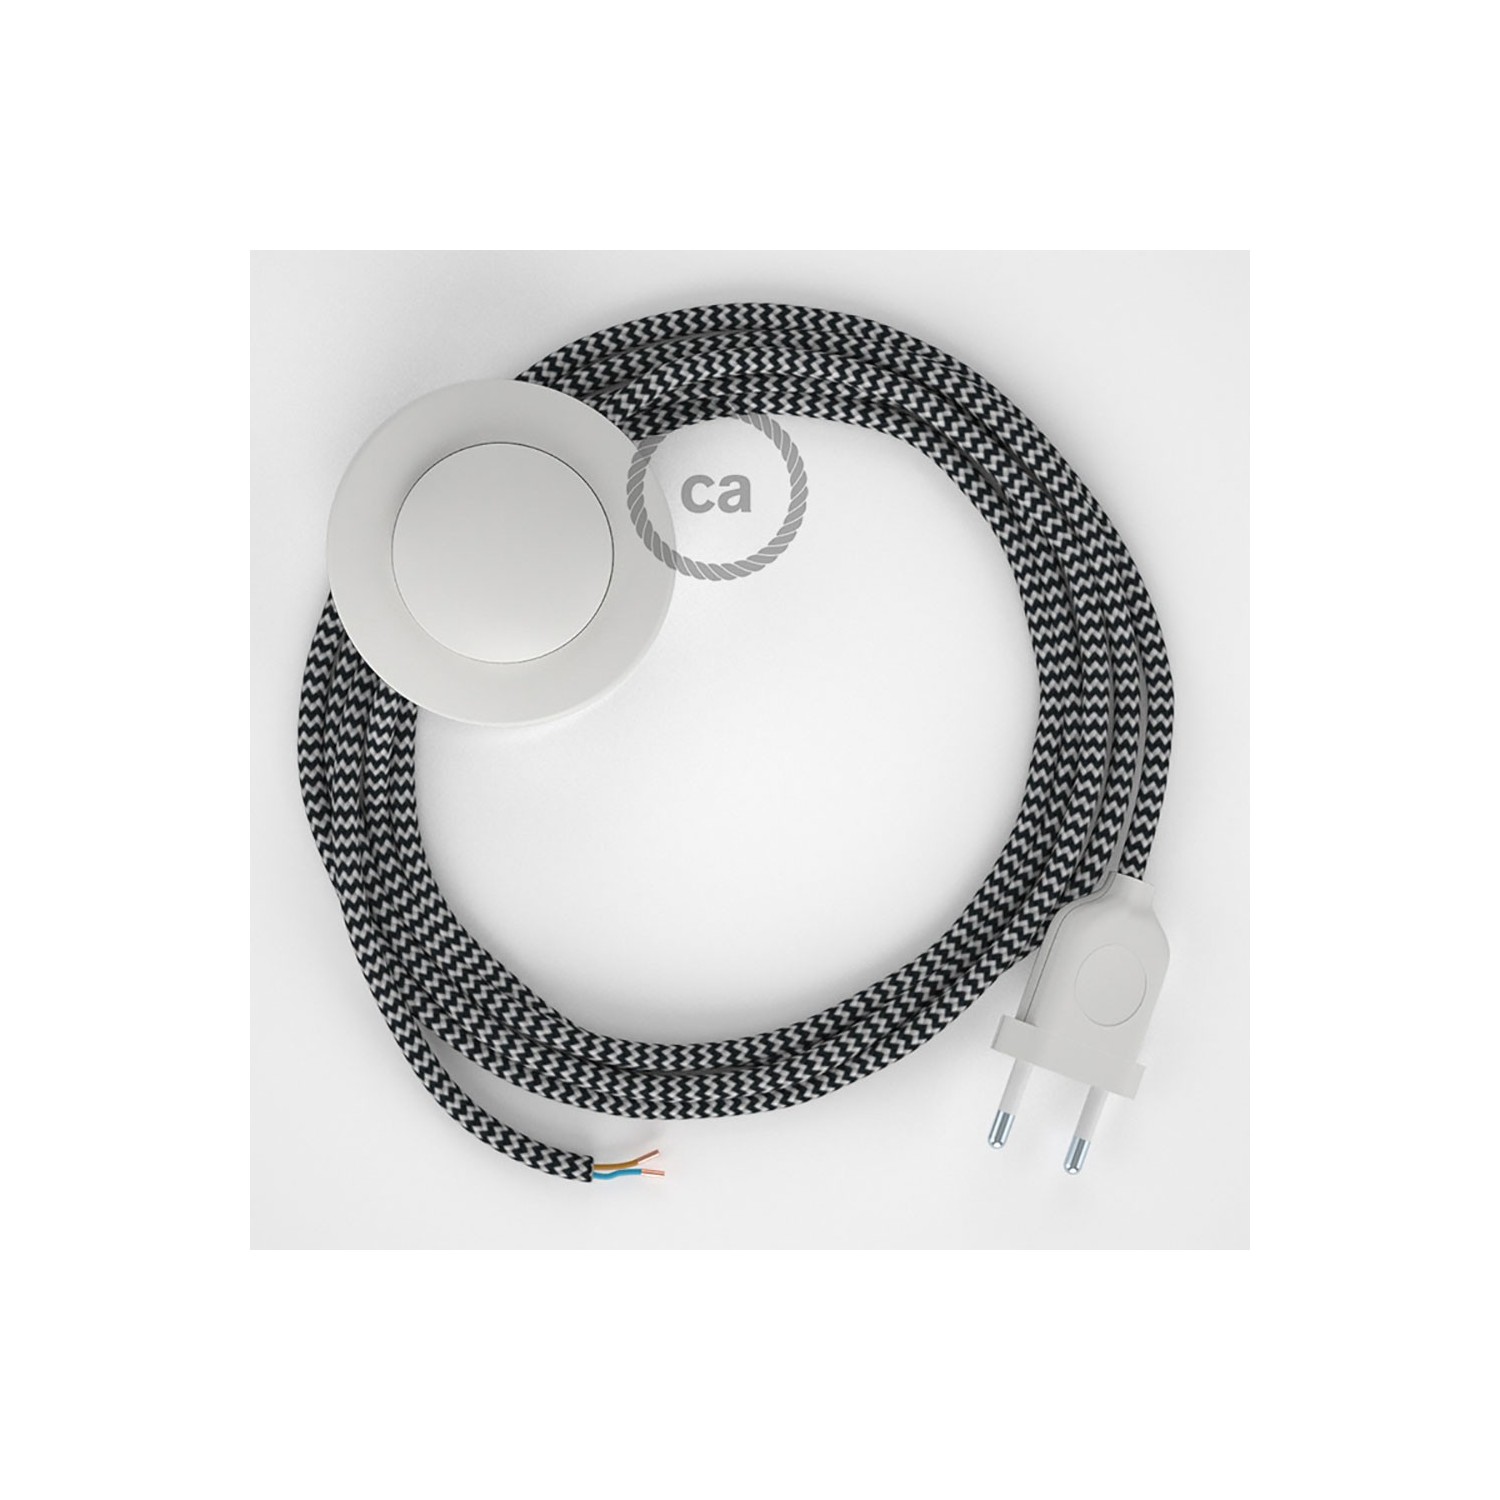 Napájací kábel pre podlahovú lampu, RZ04 Cik - cak čierny hodvábny 3 m. Vyberte si farbu zástrčky a vypínača.